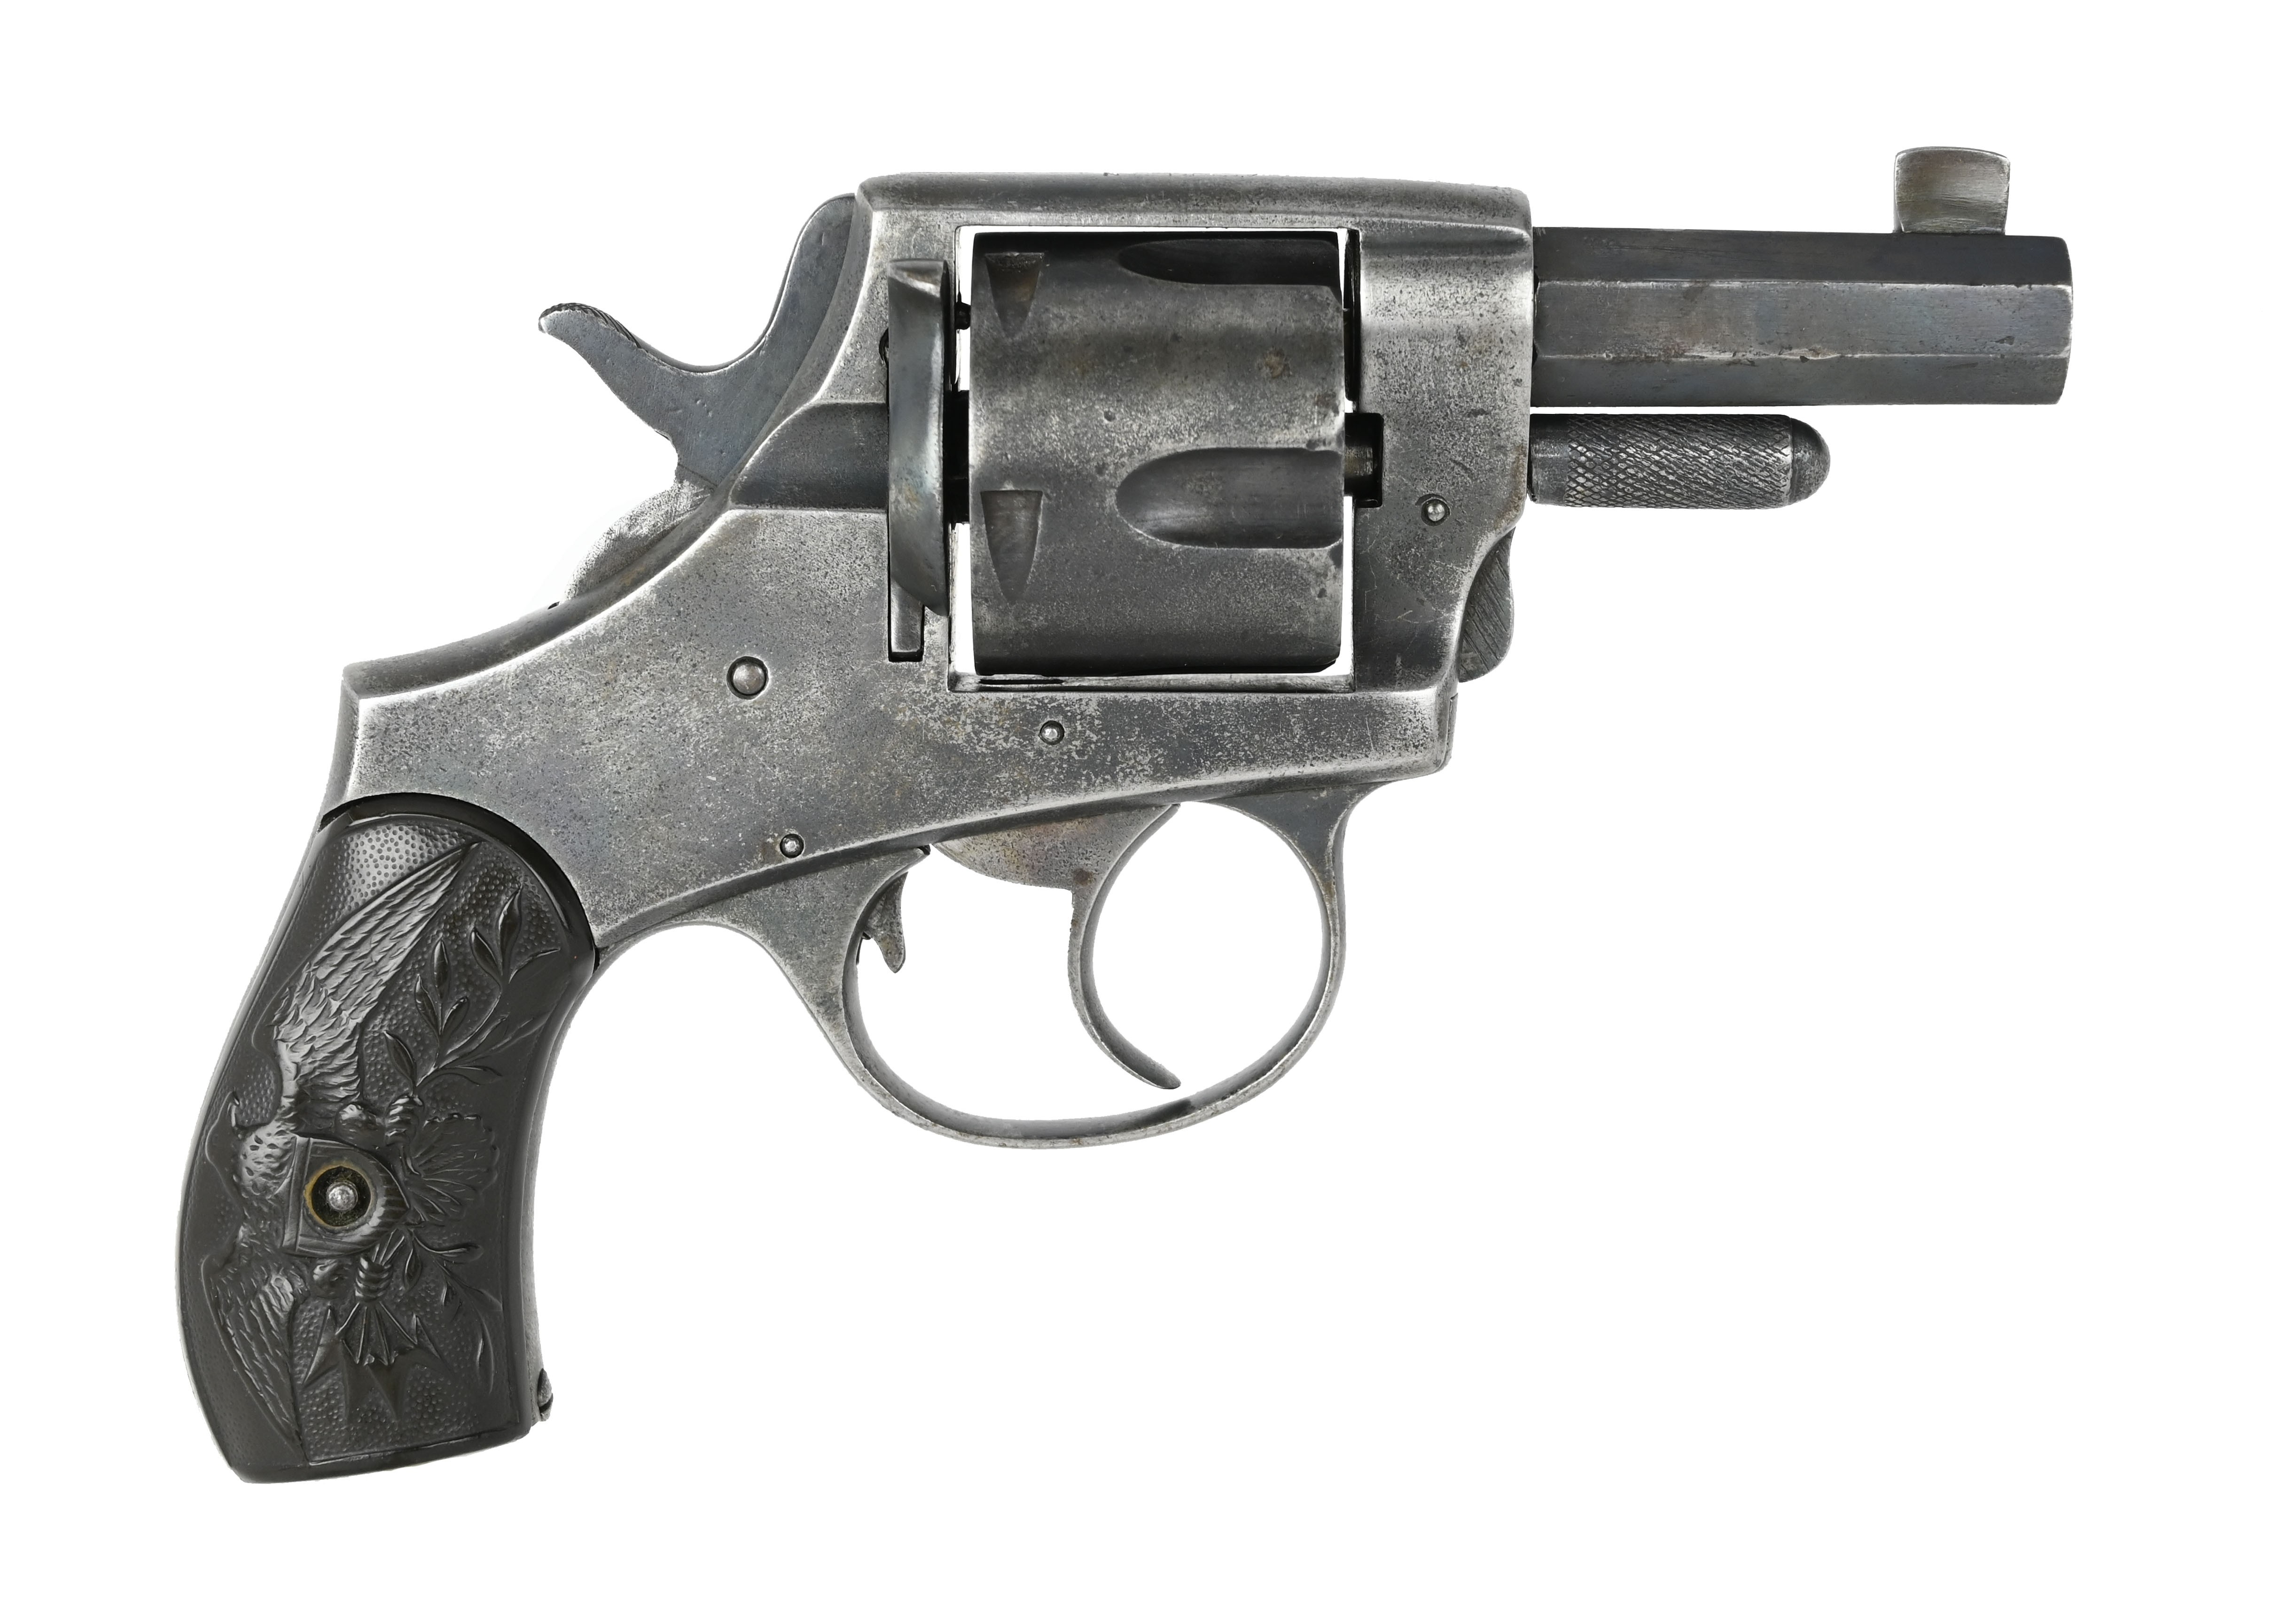 Iver Johnson American Bulldog .44 Caliber Revolver for sale.